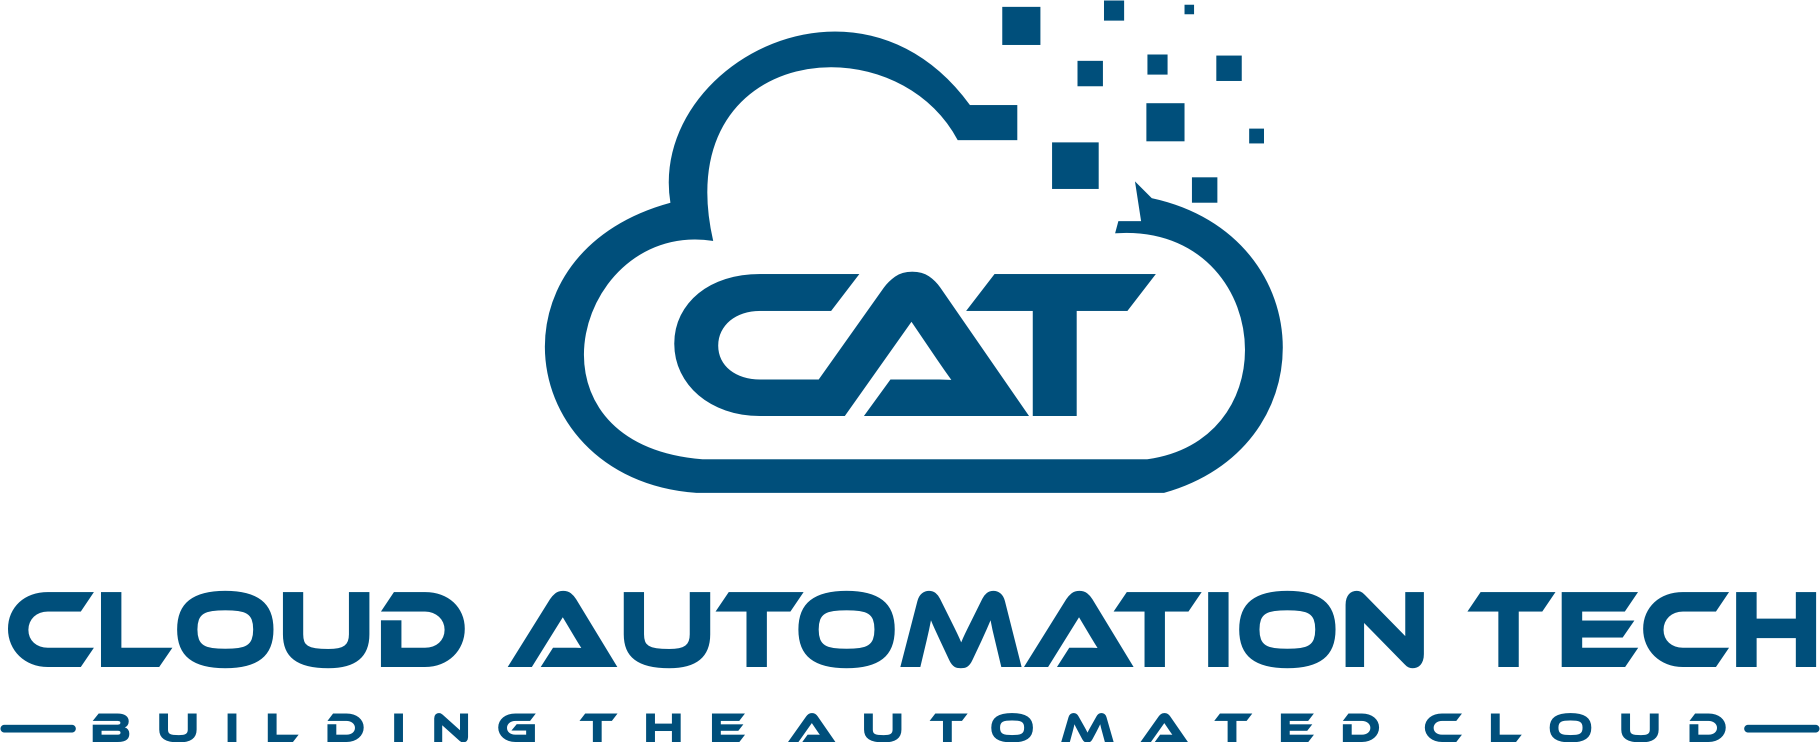 Cloud Automation Tech